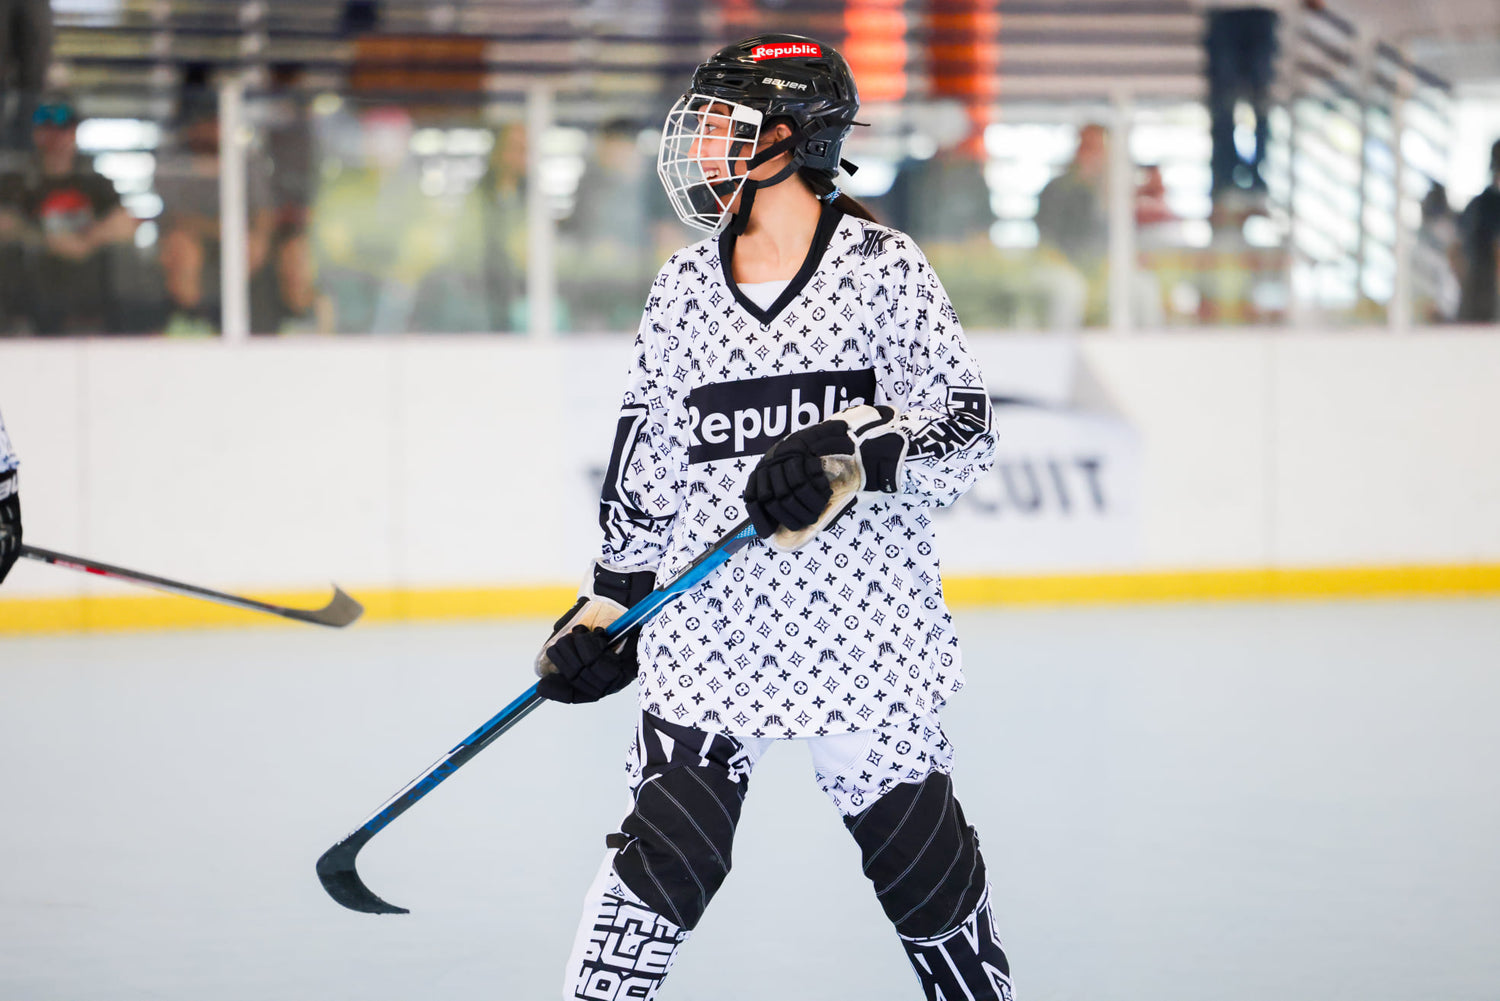 Custom Hockey Uniforms, Custom Hockey Jerseys&Hockey Performance Apparel at   - Uncrested Jerseys